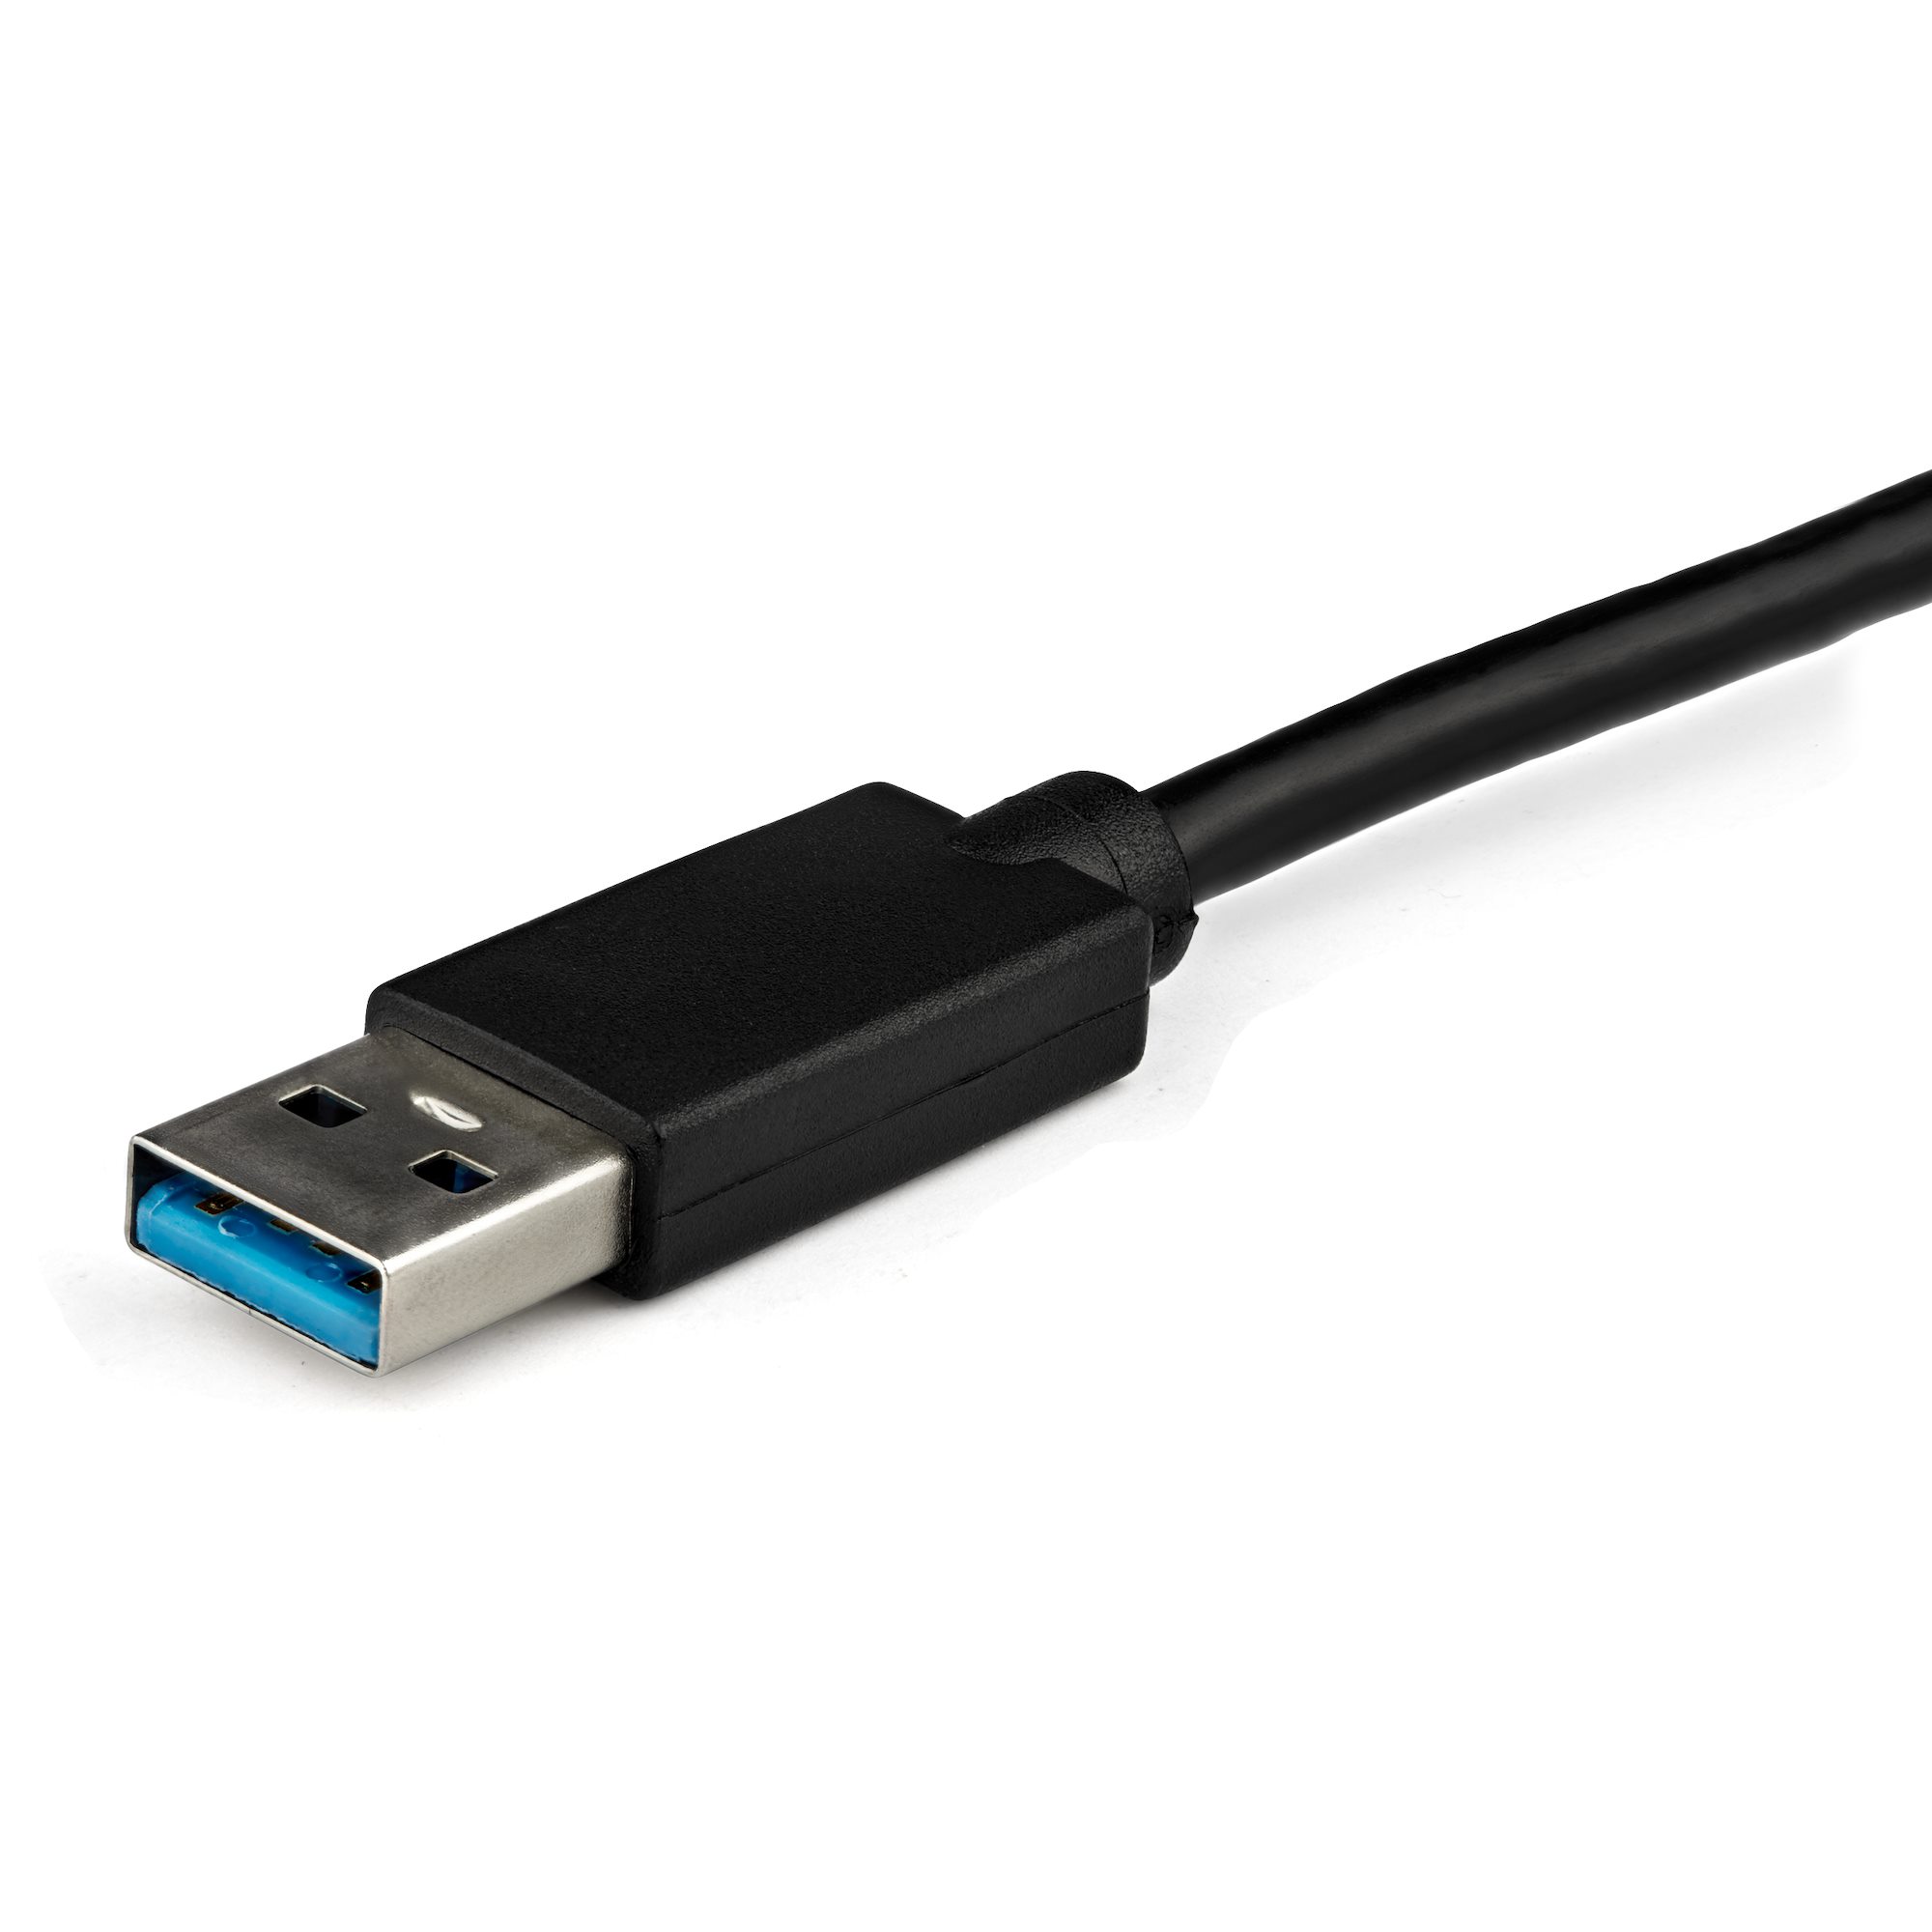 Startech.com Slim USB 3.0 To HDMI Adaptateur multimoniteur de carte vidéo externe 